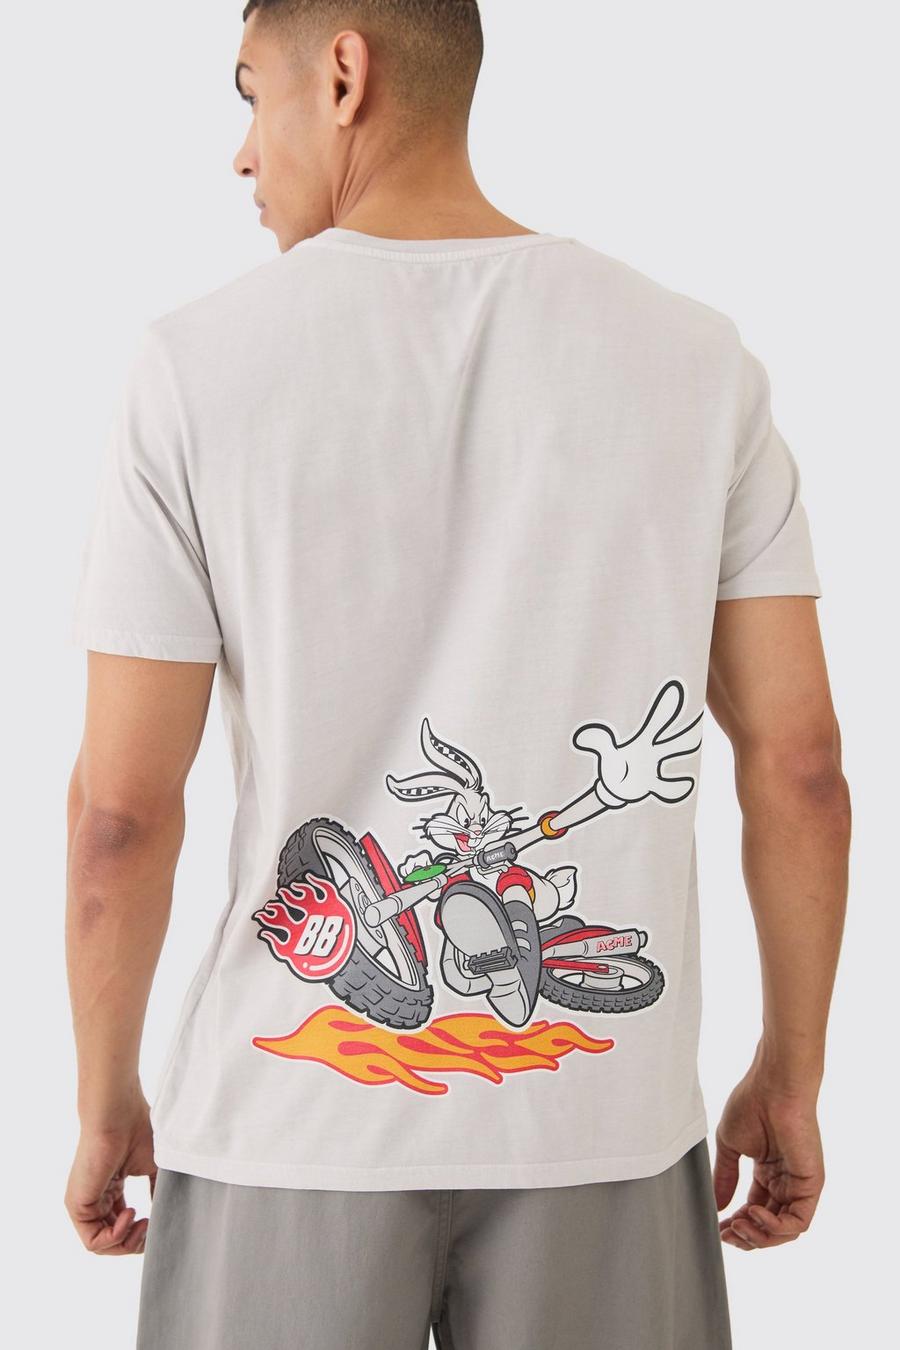 Camiseta oversize con lavado a la piedra de Bugs Bunny de los Looney Tunes, Stone